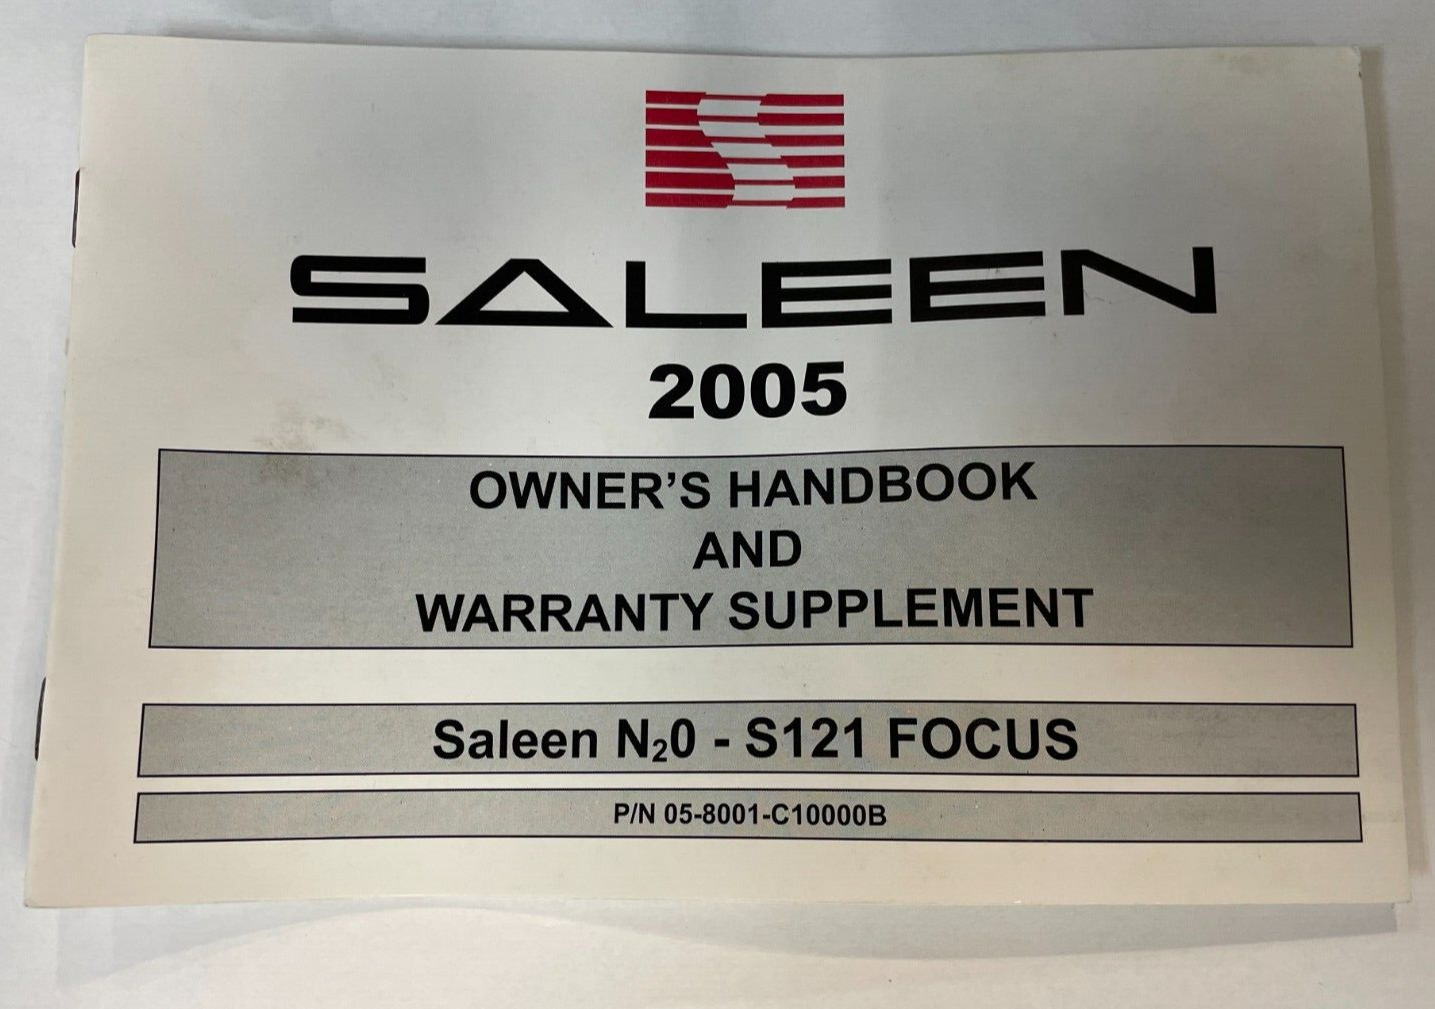 2005 Owner's Handbook & Warranty Supplement Mustang Saleen N2O-S121 Focus